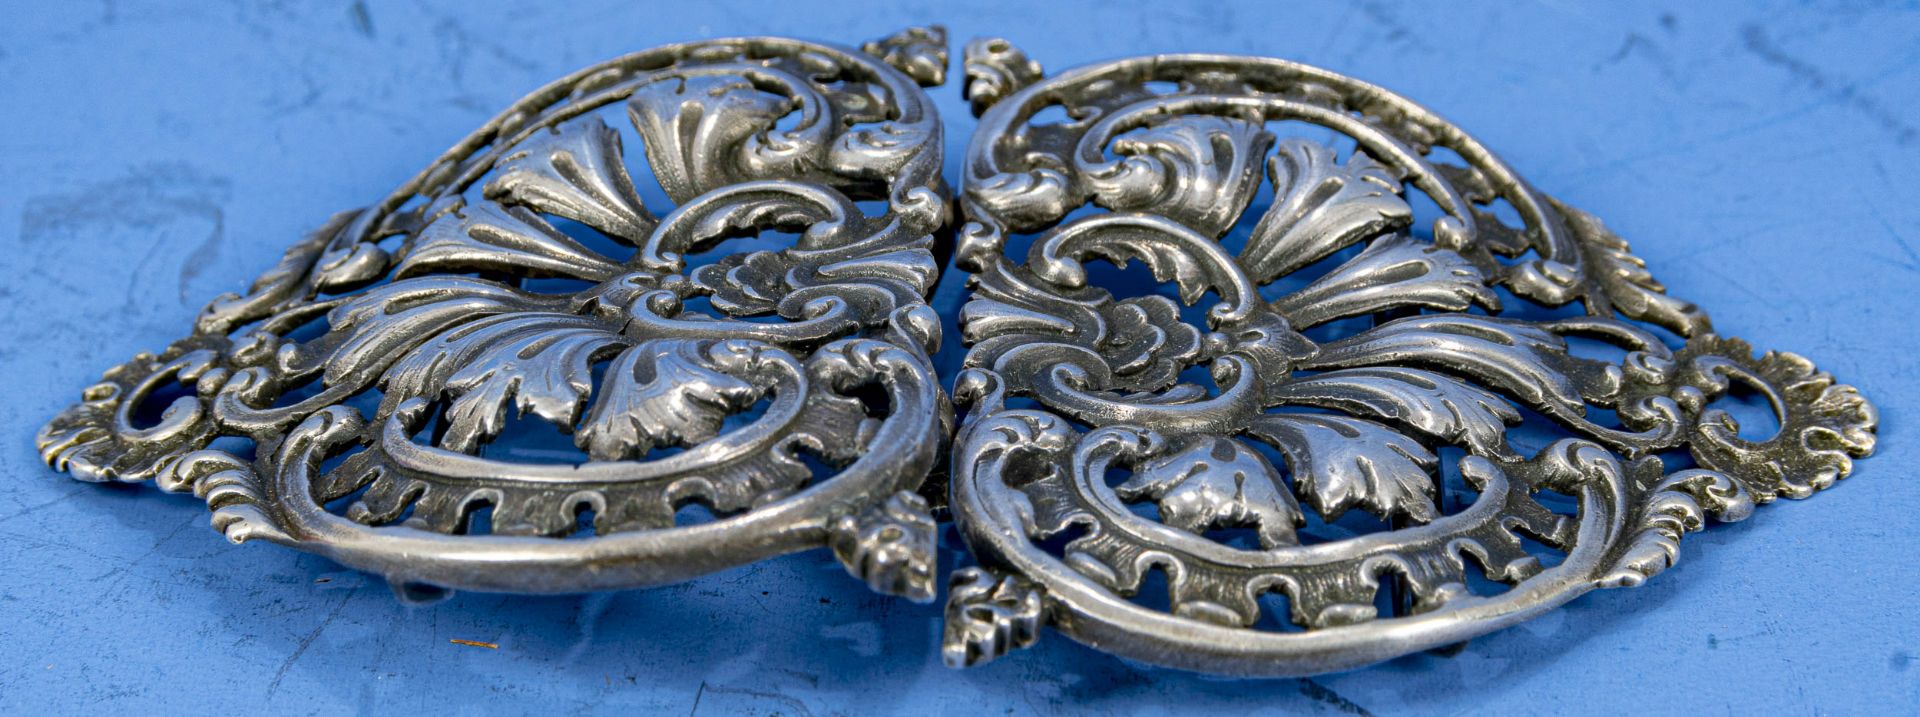 2tlg., teils durchbrochen gearbeitete/ gegossene Gürtelschließe aus 800er Silber; reich verziert, f - Bild 2 aus 6